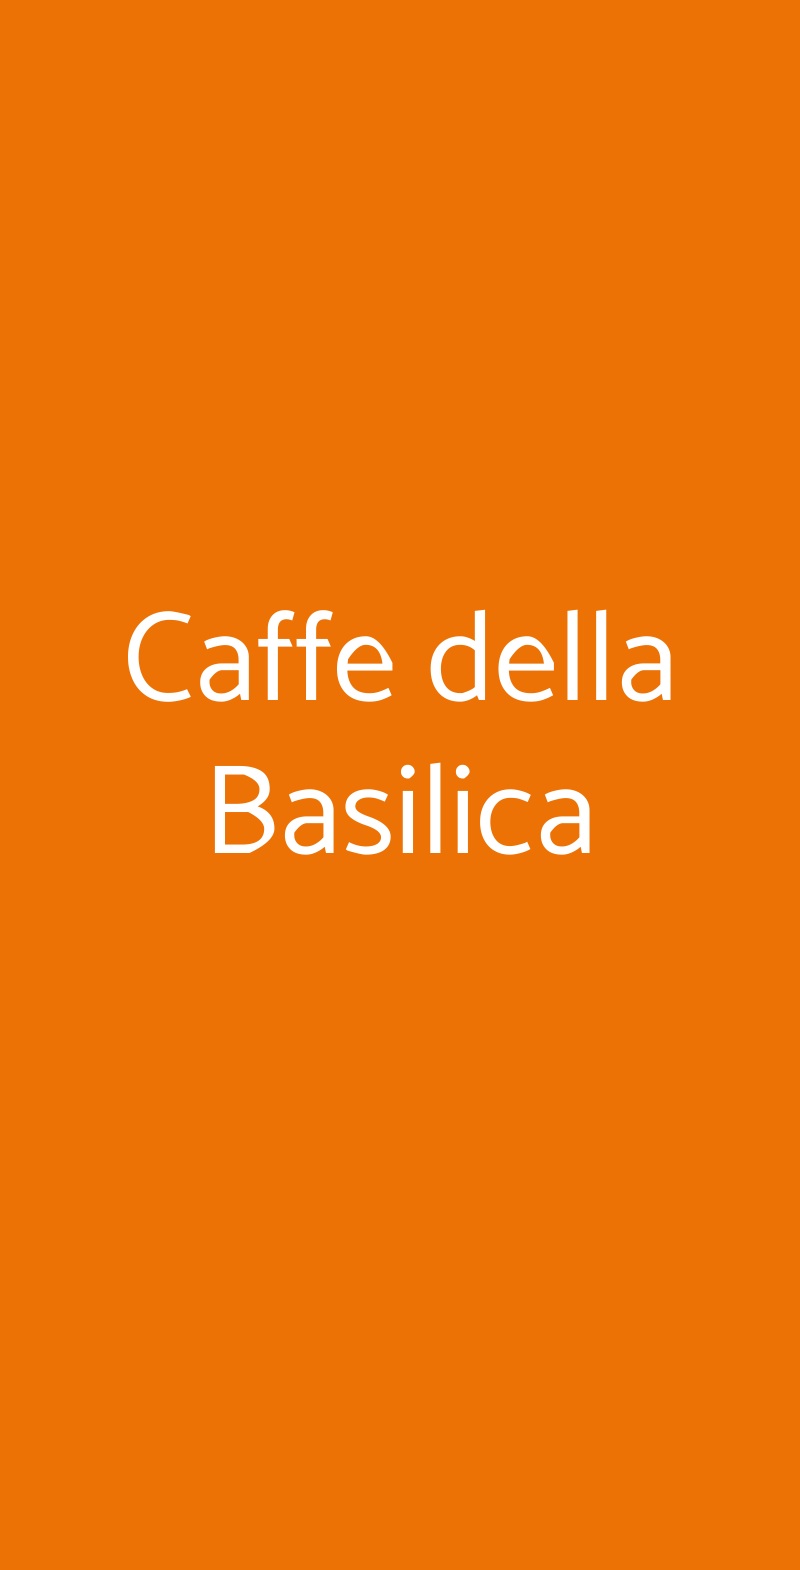 Caffe della Basilica Torino menù 1 pagina